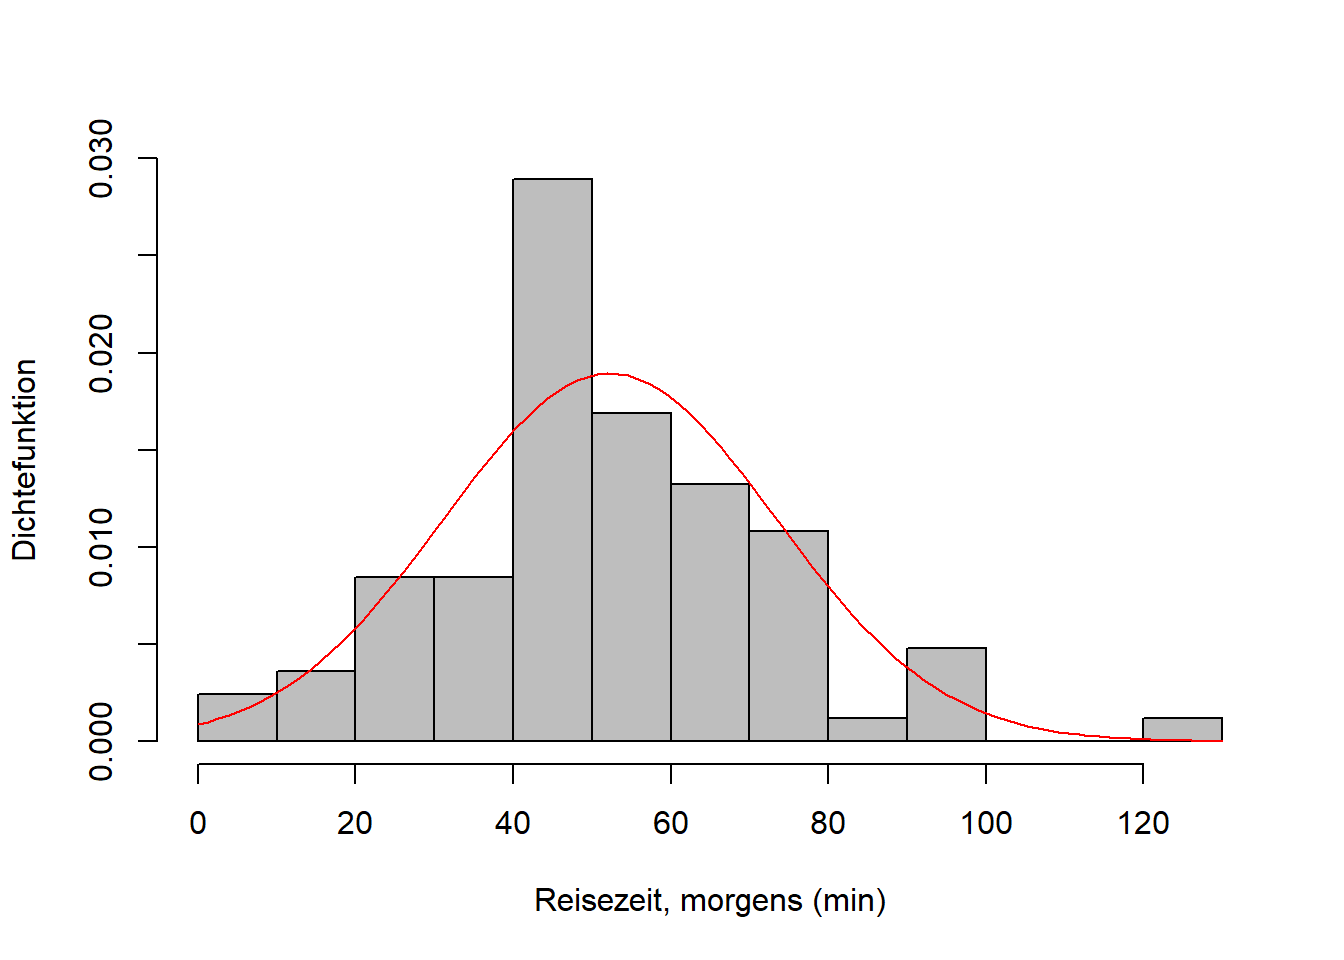 Links: Empirische (schwarz) und theoretische (rot) Verteilungsfunktion des Merkmals "Reisezeit, morgens" vom WiSe 2022/23. Für die theoretische Verteilungsfunktion wurde eine Normalverteilung angenommen, deren Parameter anhand der Stichprobe geschätzt wurden. Der maximale absolute Abstand der beiden Verteilungsfunktionen, die Teststatistik $d_n$ des KS-Testes, ist in blau markiert. Rechts: Histogramm derselben Daten mit geschätzter Dichtefunktion.